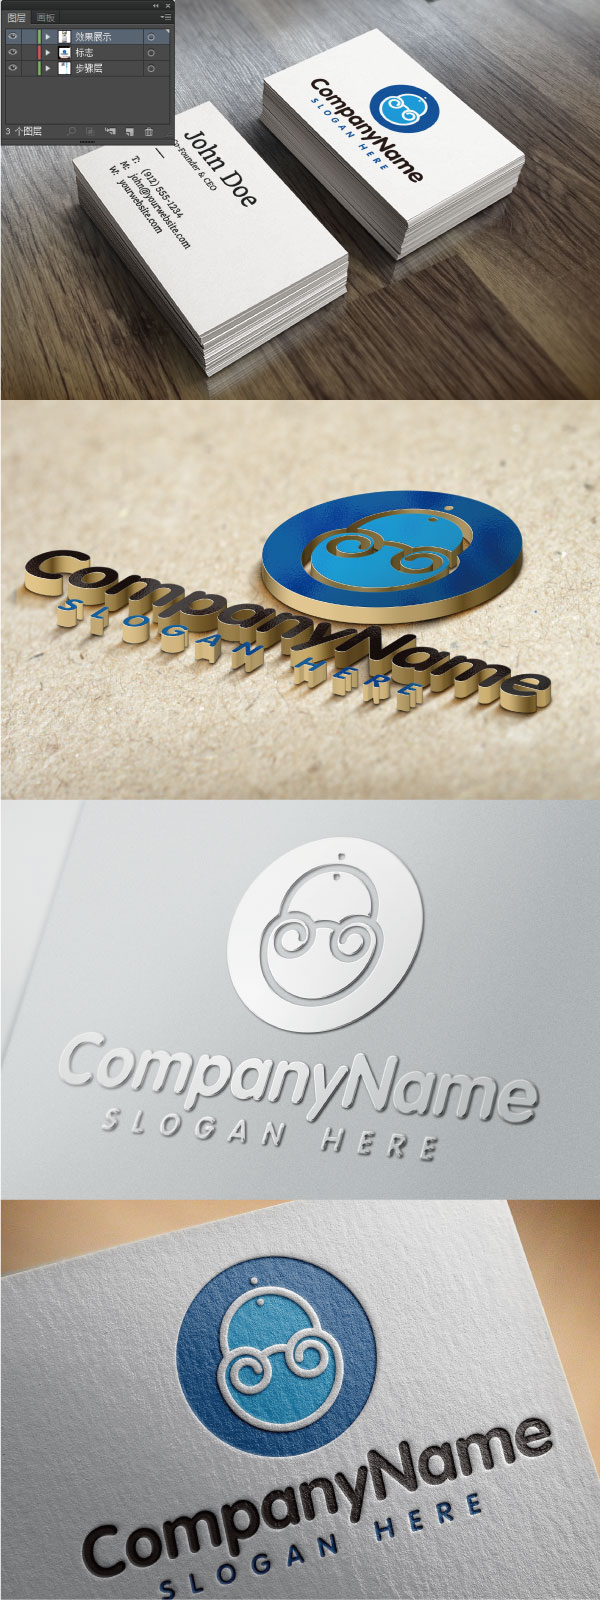 标志,企业logo商标设计